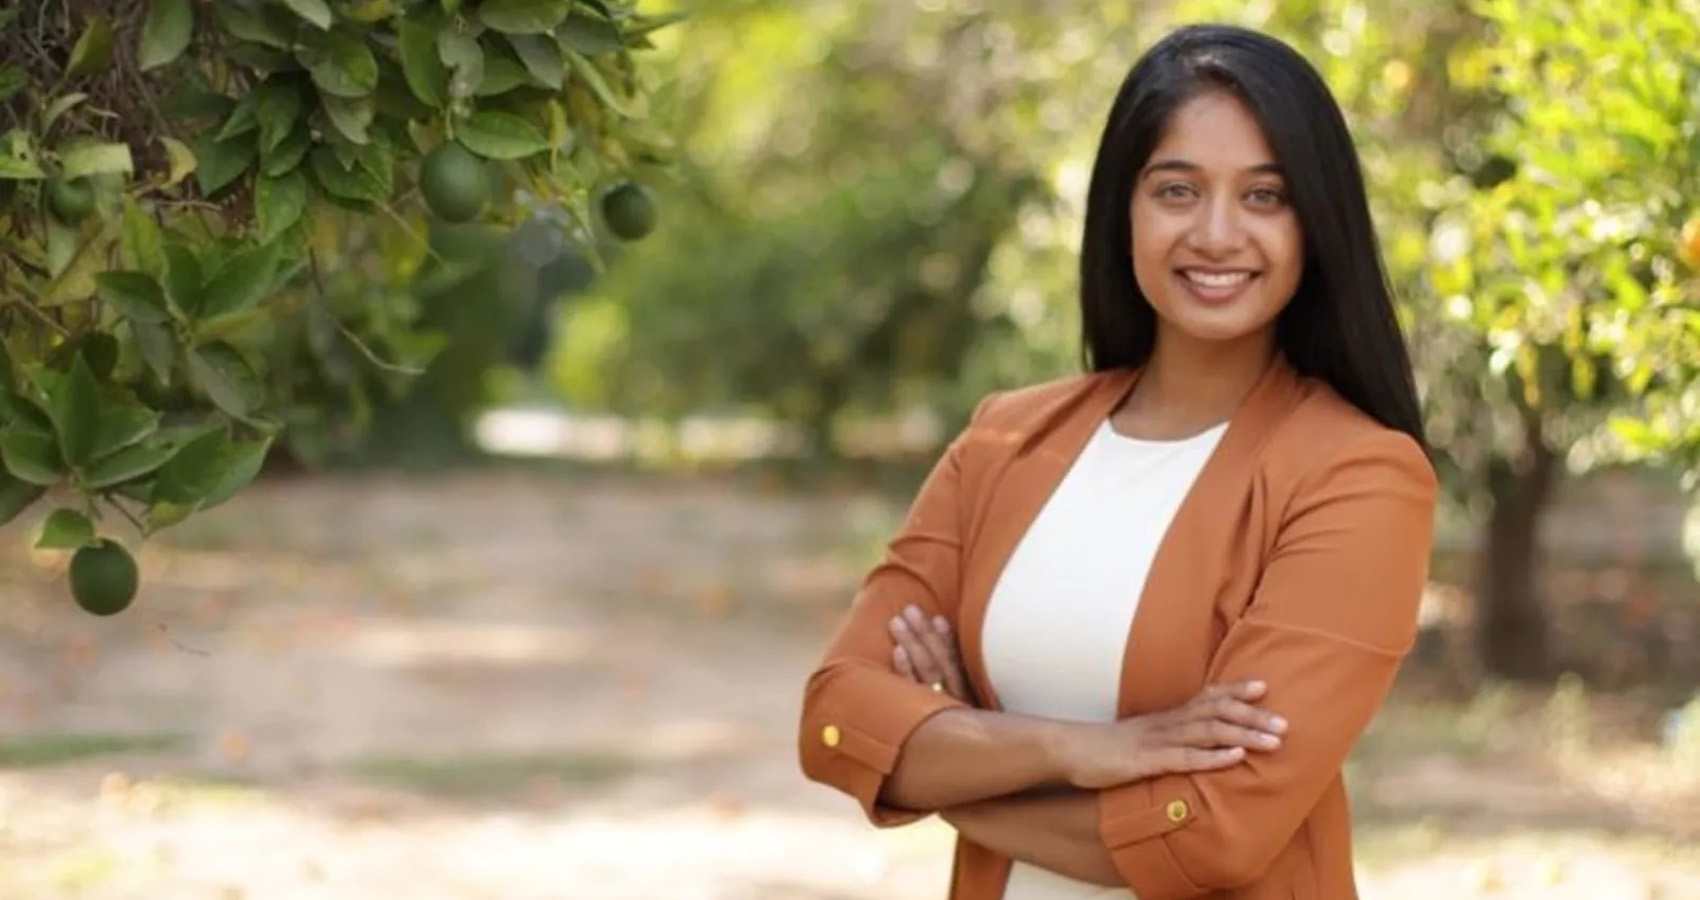 28-year Old Shrina Kurani To Run For US Congress